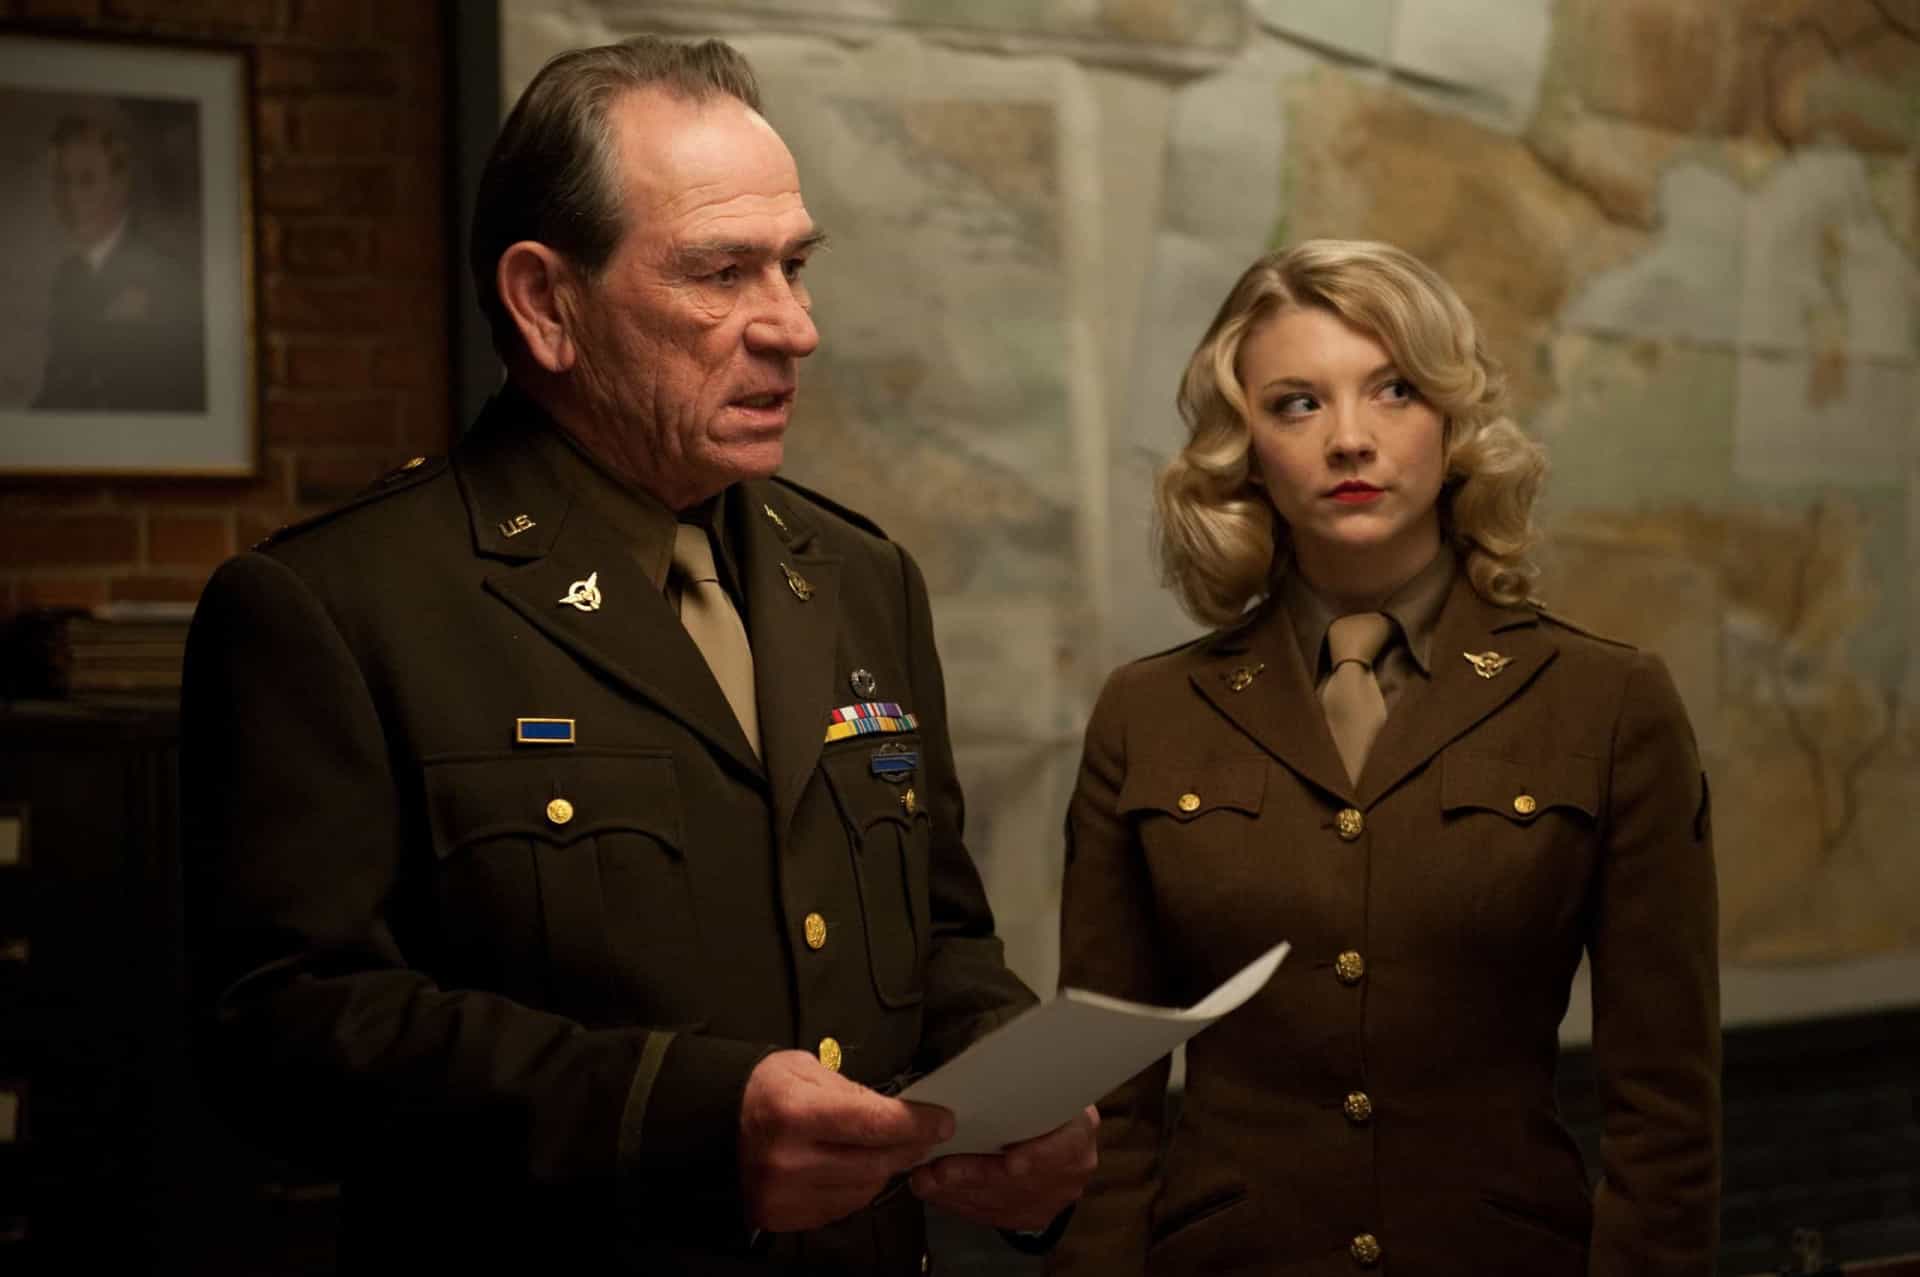 <p>A atriz de 'Game of Thrones' Natalie Dormer interpretou a soldado Lorraine em 'Capitão América: O Primeiro Vingador' (2011).</p>